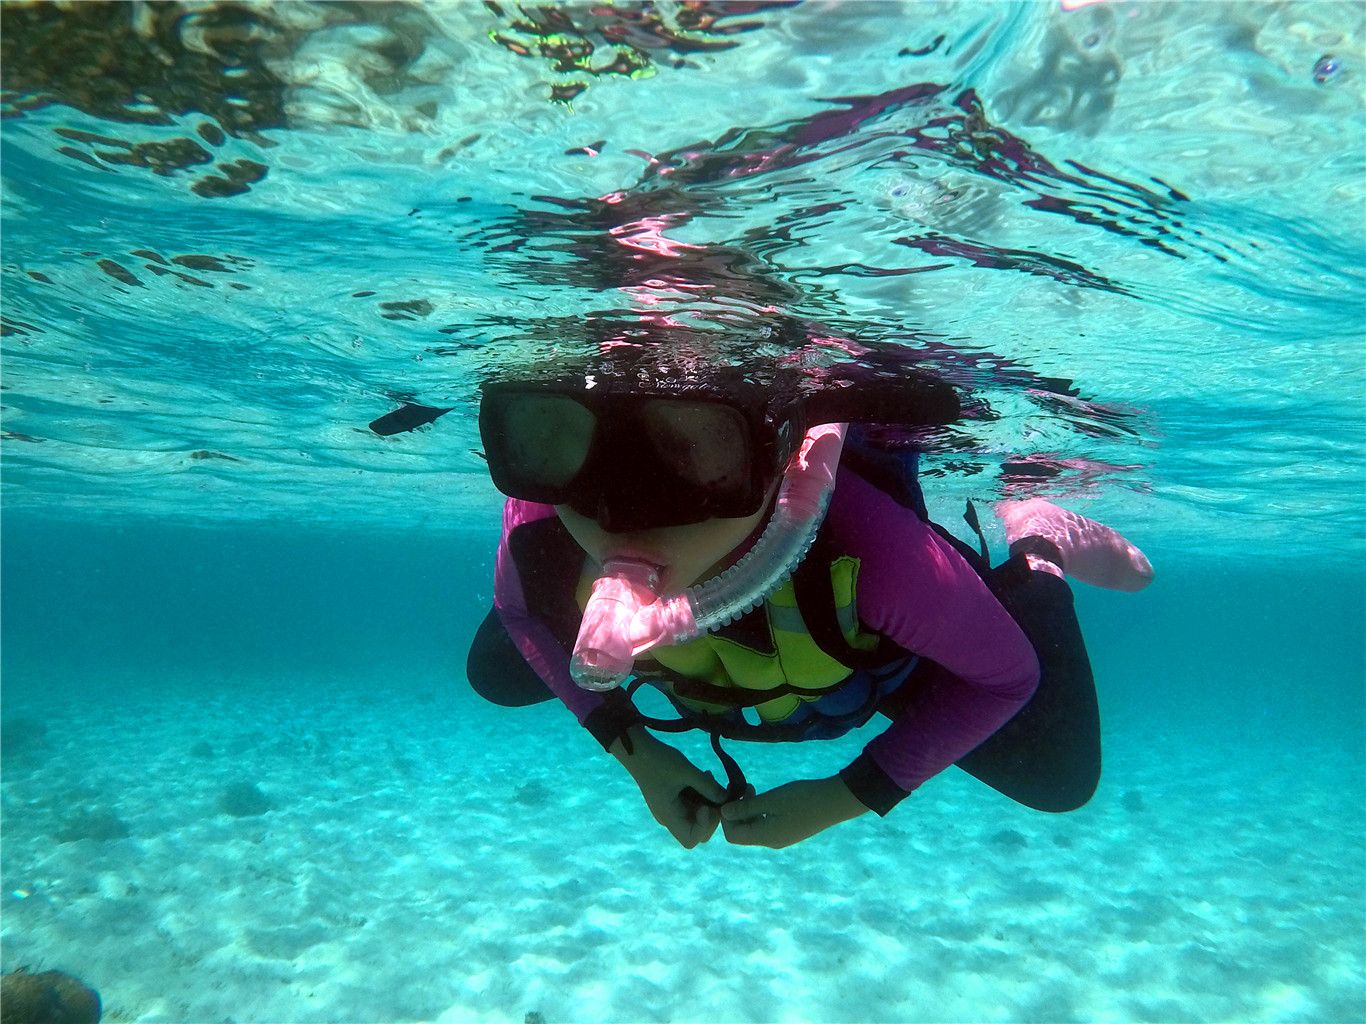 印度尼西亚达拉湾群岛中的马图拉岛浮潜美景： 达拉湾群岛的潜水资源非常丰富，潜点离岛屿都不算太远，所以